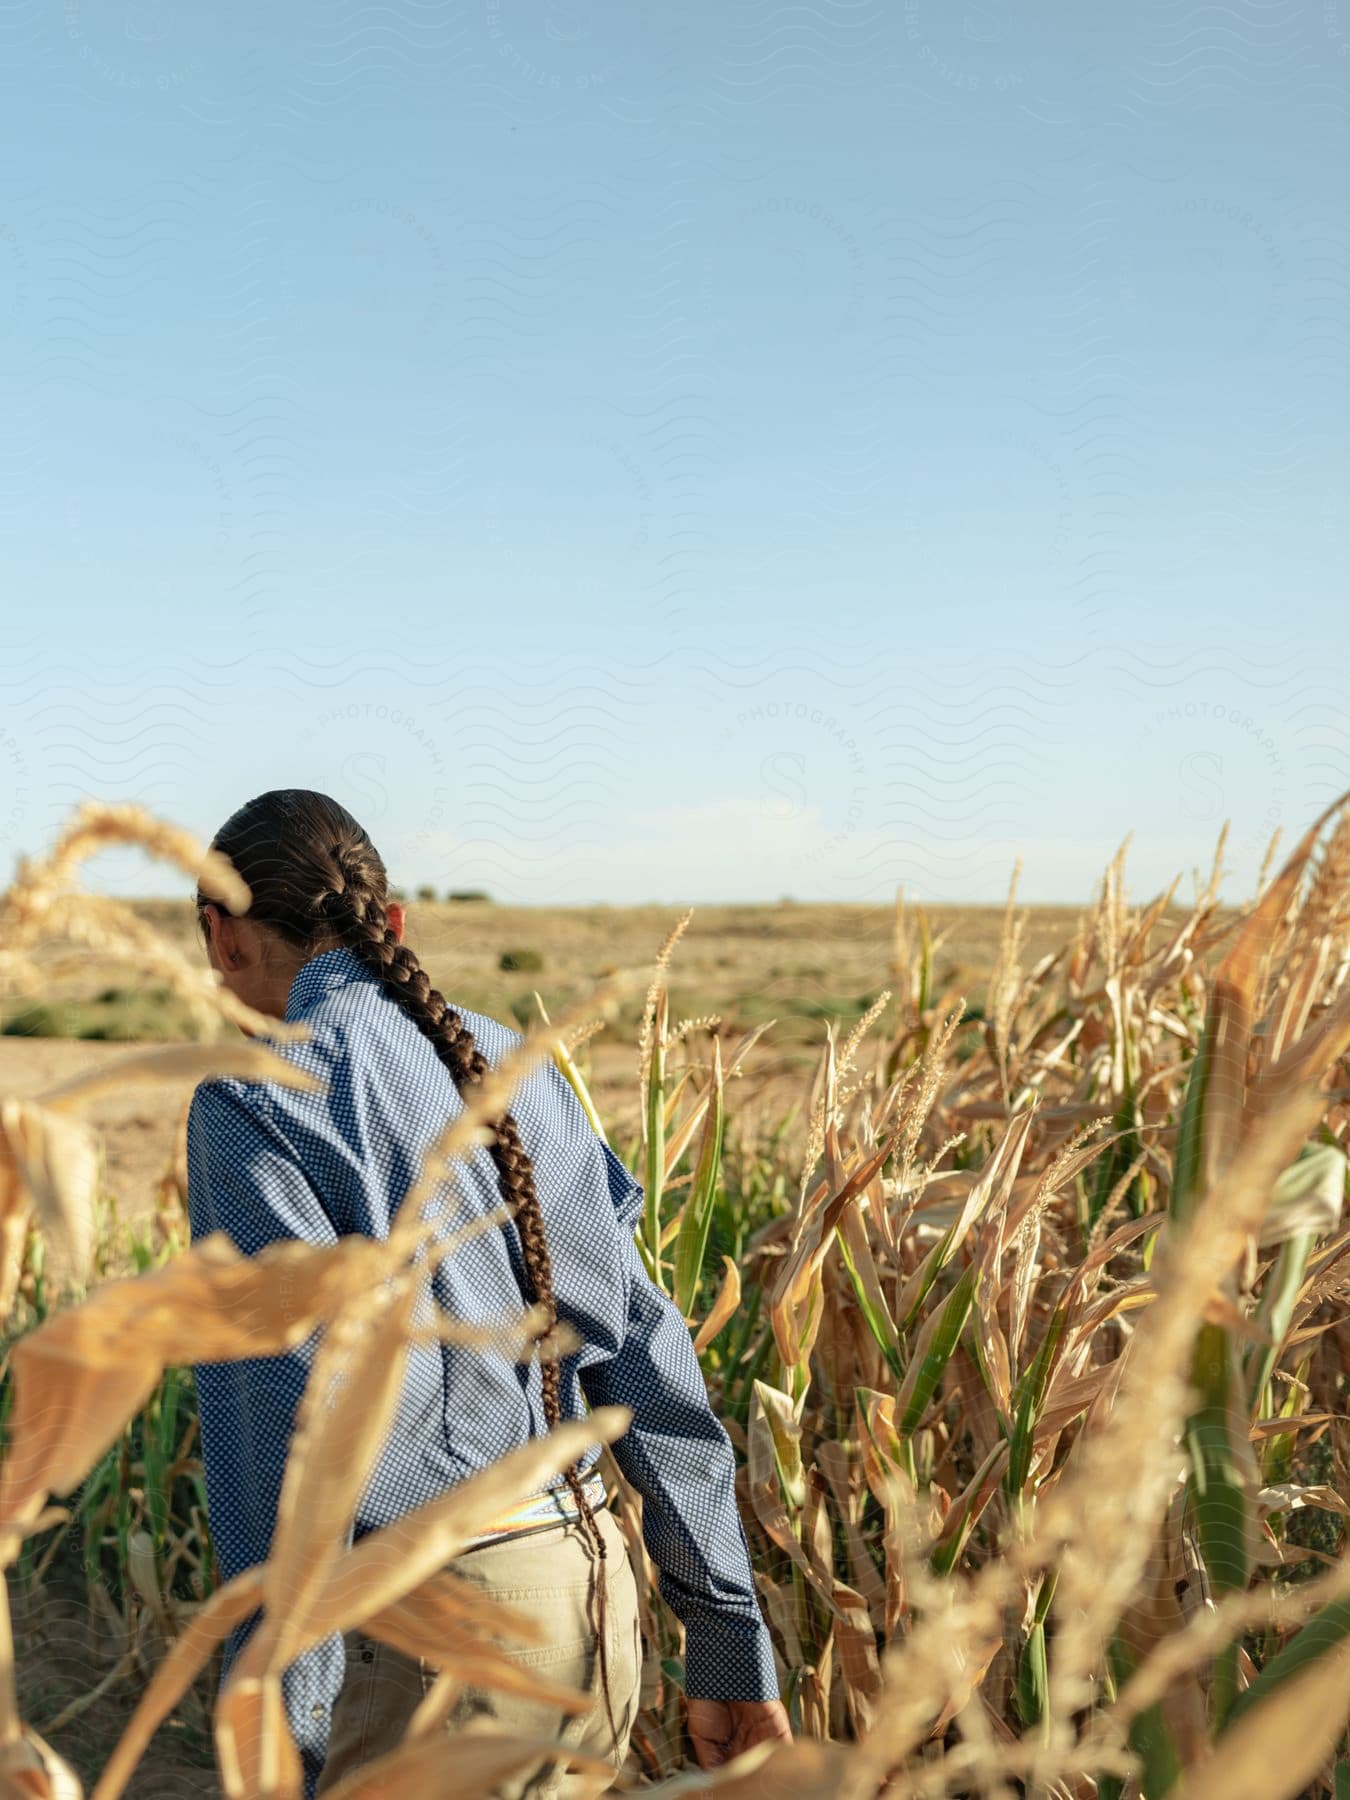 A woman walking in a wheat field